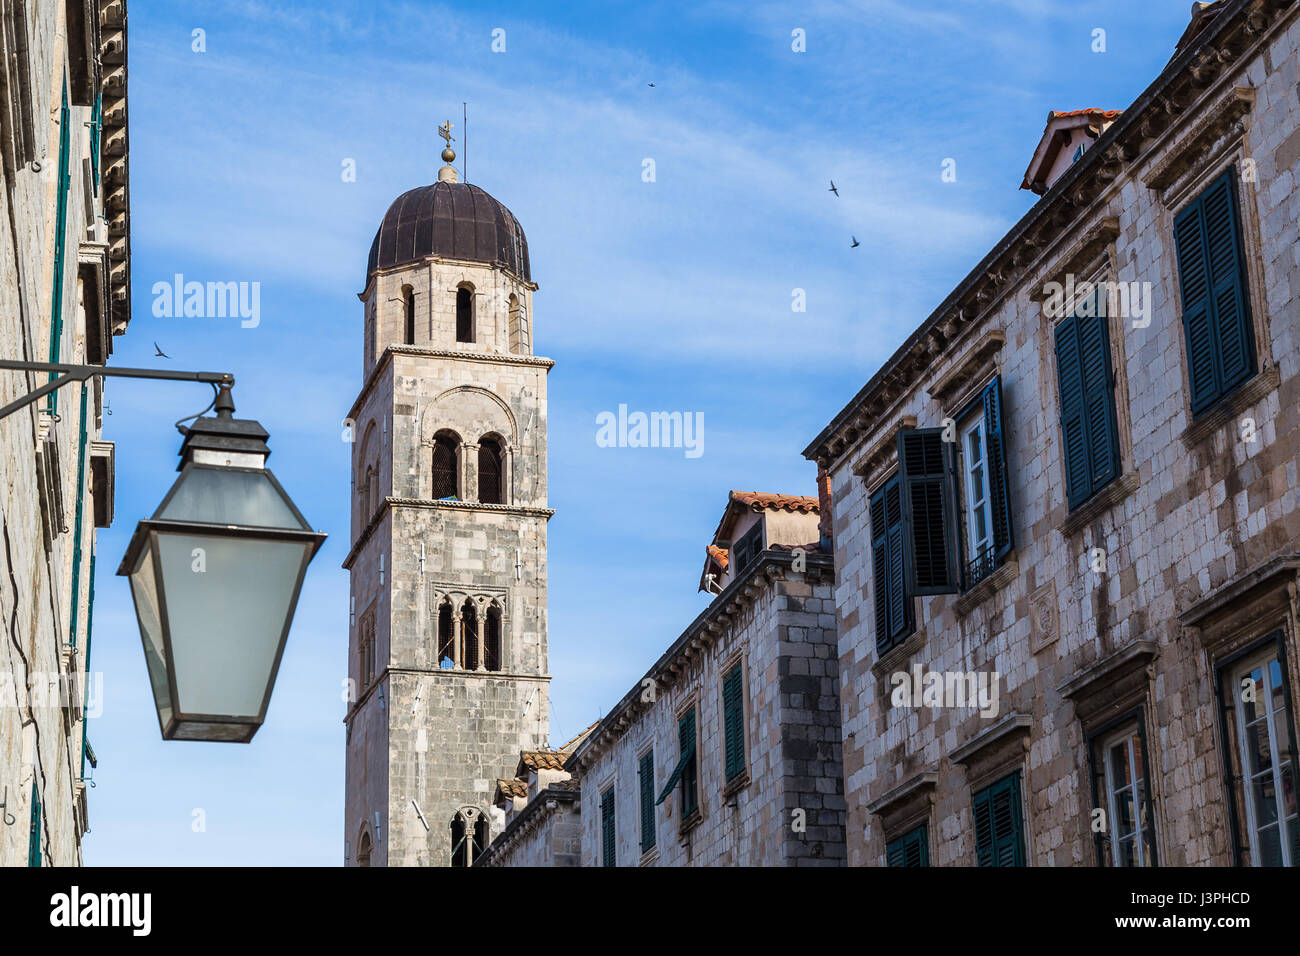 La vieille ville de Dubrovnik n'est pas simplement au sujet de l'histoire, c'est aussi plein de la culture et de la cuisine locale grâce aux nombreux restaurants, cafés et bars Banque D'Images